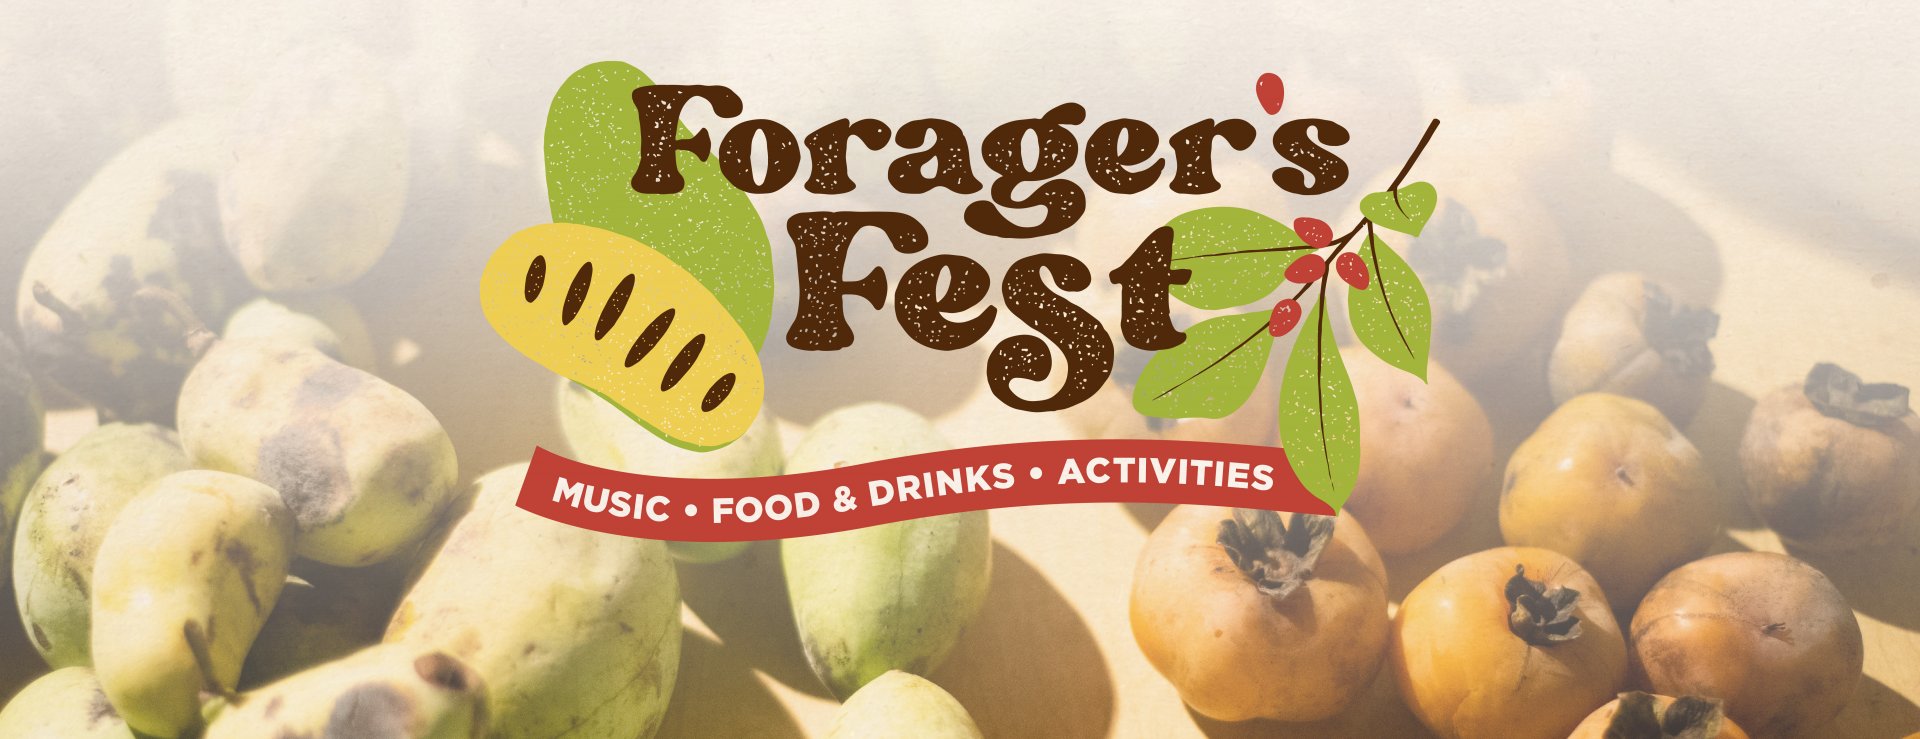 Forager's Fest on Friday, September 20